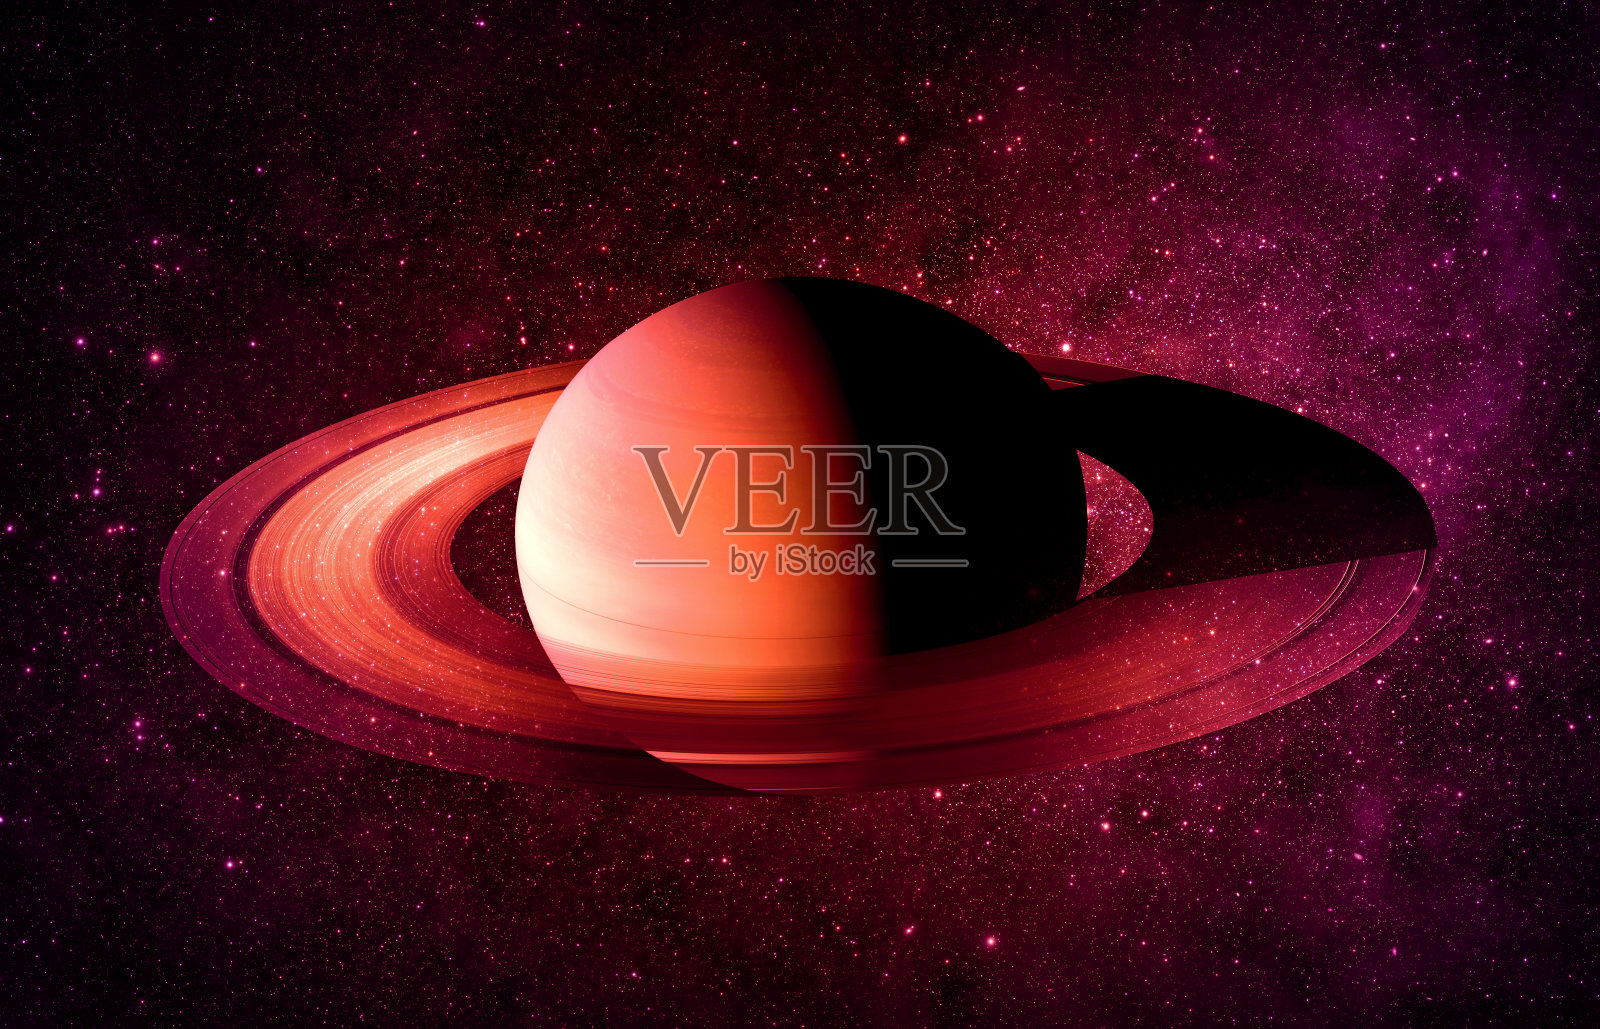 土星-由美国宇航局提供的图像元素照片摄影图片